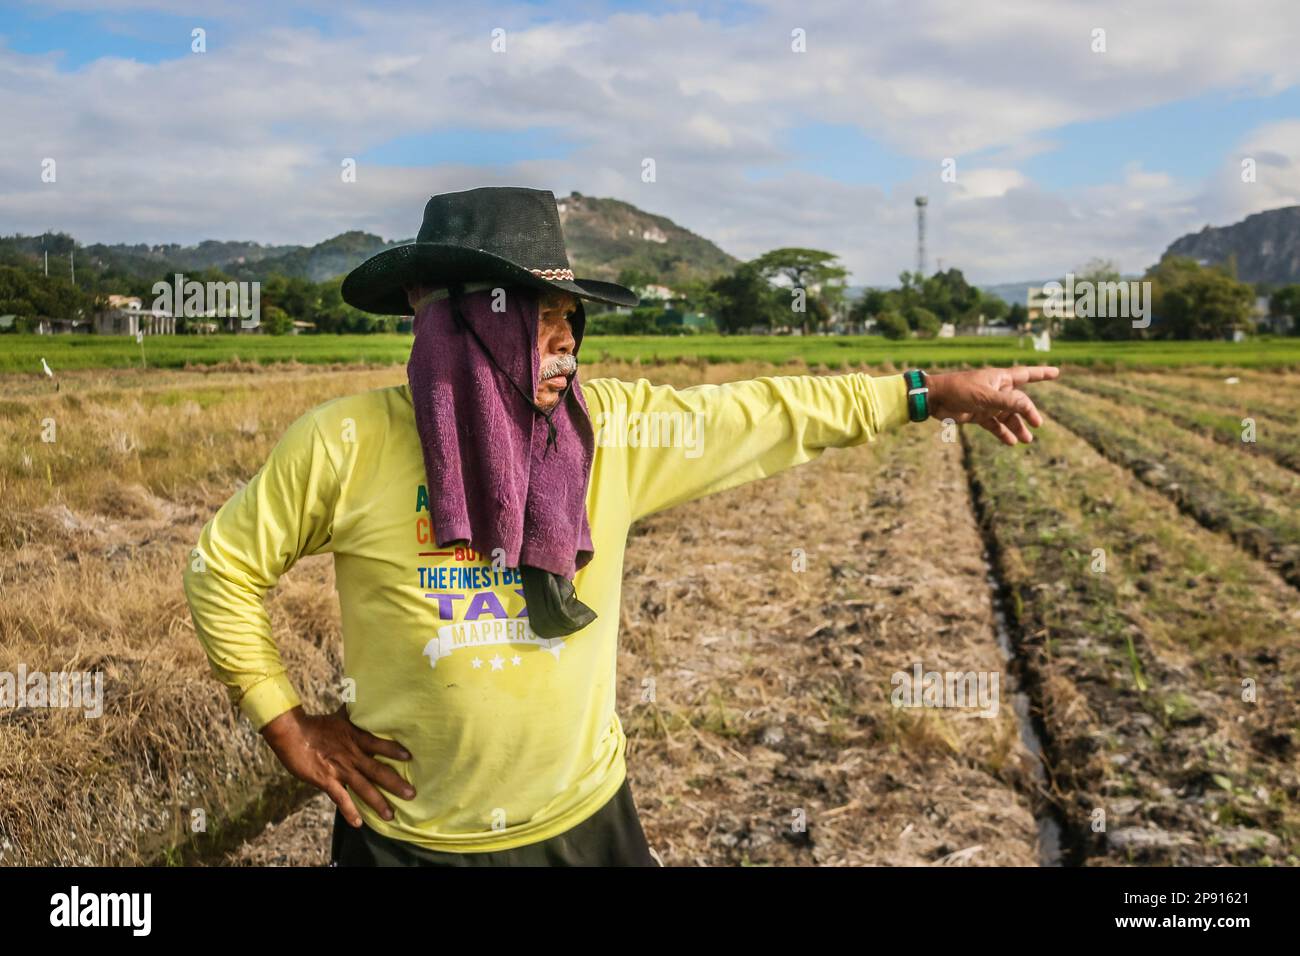 Ein Landwirt zeigt seinen Arbeitsplatz auf einem kleinen Ackerland in Teresa. Die Landwirte auf den Philippinen stehen vor einer Vielzahl sozialer Probleme. Eines der schwerwiegendsten sozialen Probleme ist die Landlosigkeit, die durch die unzureichende Unterstützung der Regierung noch verschärft wird. Viele philippinische Bauern sind gezwungen, als Pächter oder Teilhaber zu arbeiten, wobei sie wenig Sicherheit und Kontrolle über ihr eigenes Land haben. Darüber hinaus leiden die Landwirte unter den drohenden Düngemittelpreisen, die über 2000 Pesos (40 USD) pro Sack liegen, was zu einem niedrigen Einkommen führt und sich negativ auf ihren Lebensunterhalt auswirkt. (Foto: Ryan Eduard Benaid/SOPA Images/Sipa USA) Stockfoto